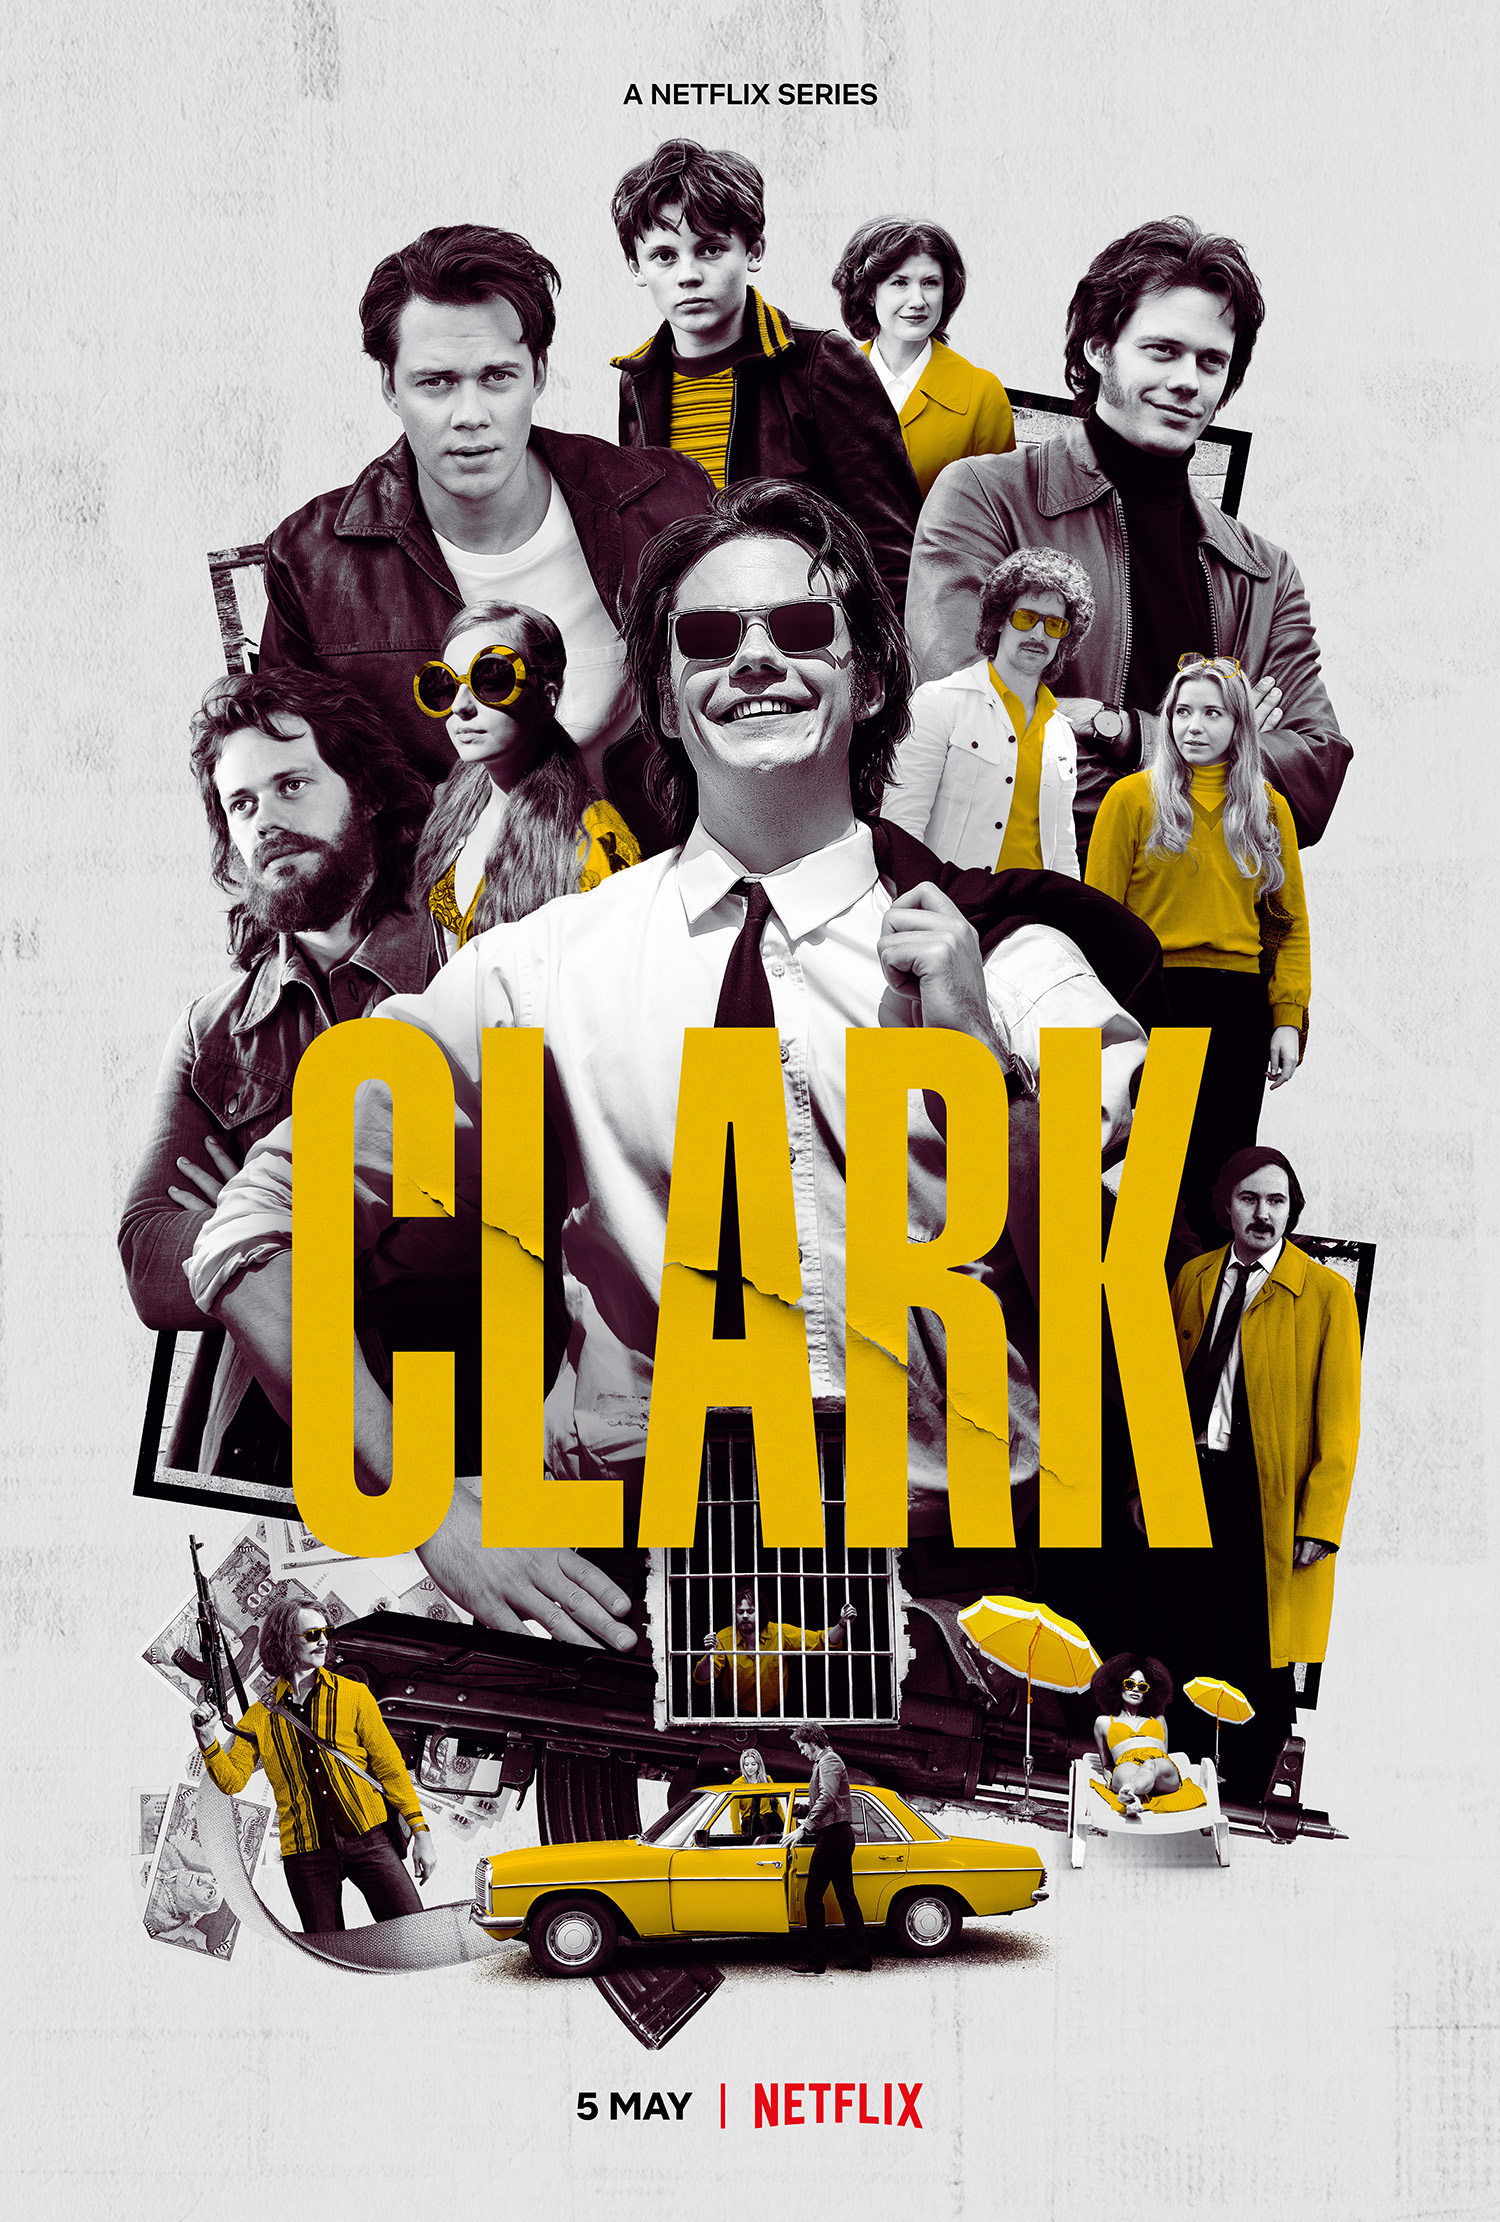 Clark. Image: Courtesy of Netflix